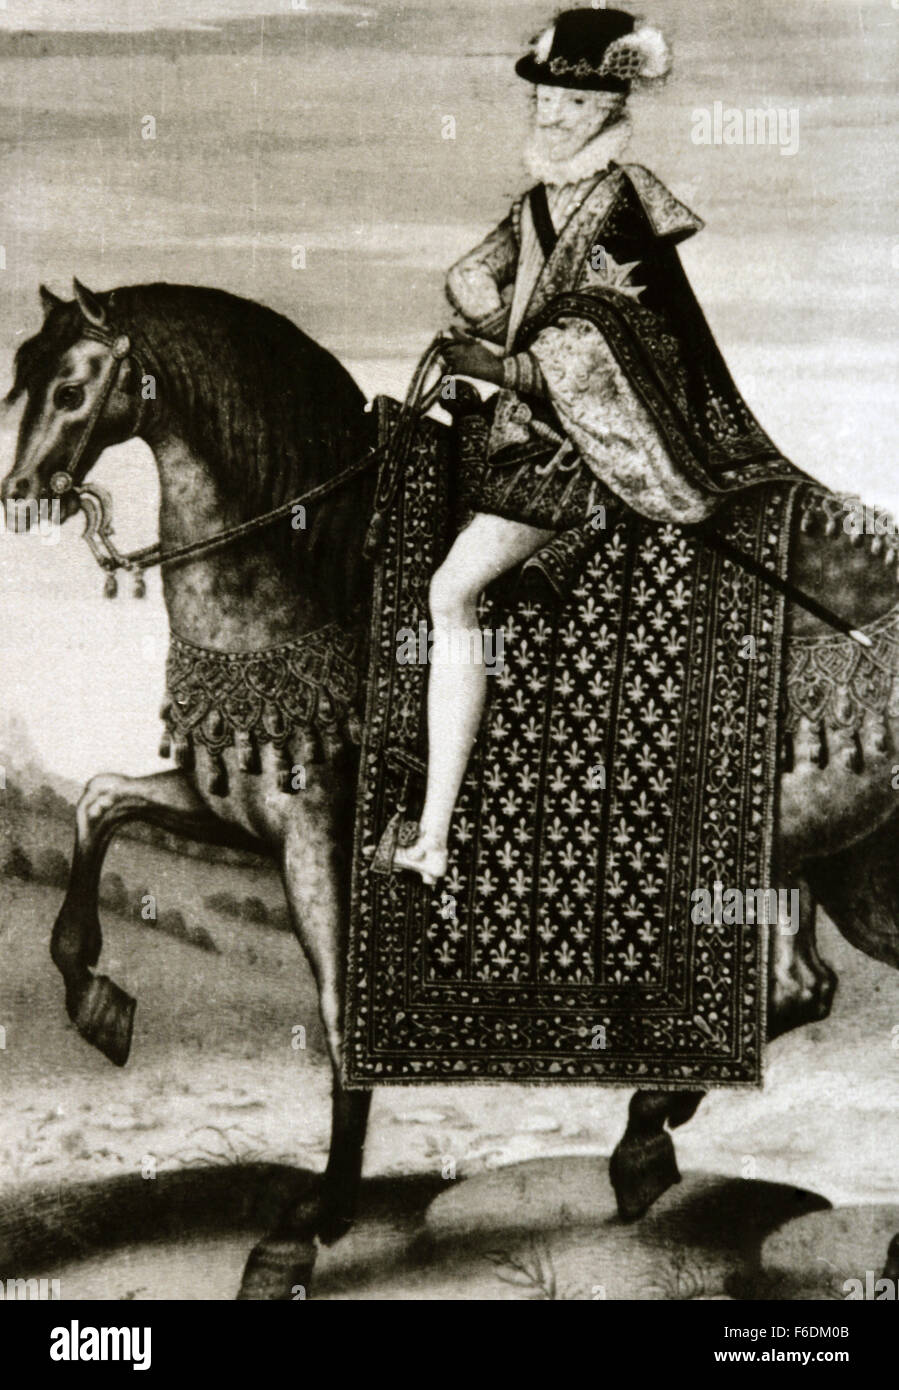 Enrique IV de Francia (1553-1610). Rey de Navarra como Enrique III de 1572-1610 y de 1589-1610, Rey de Francia. Retrato ecuestre. Grabado. Foto de stock